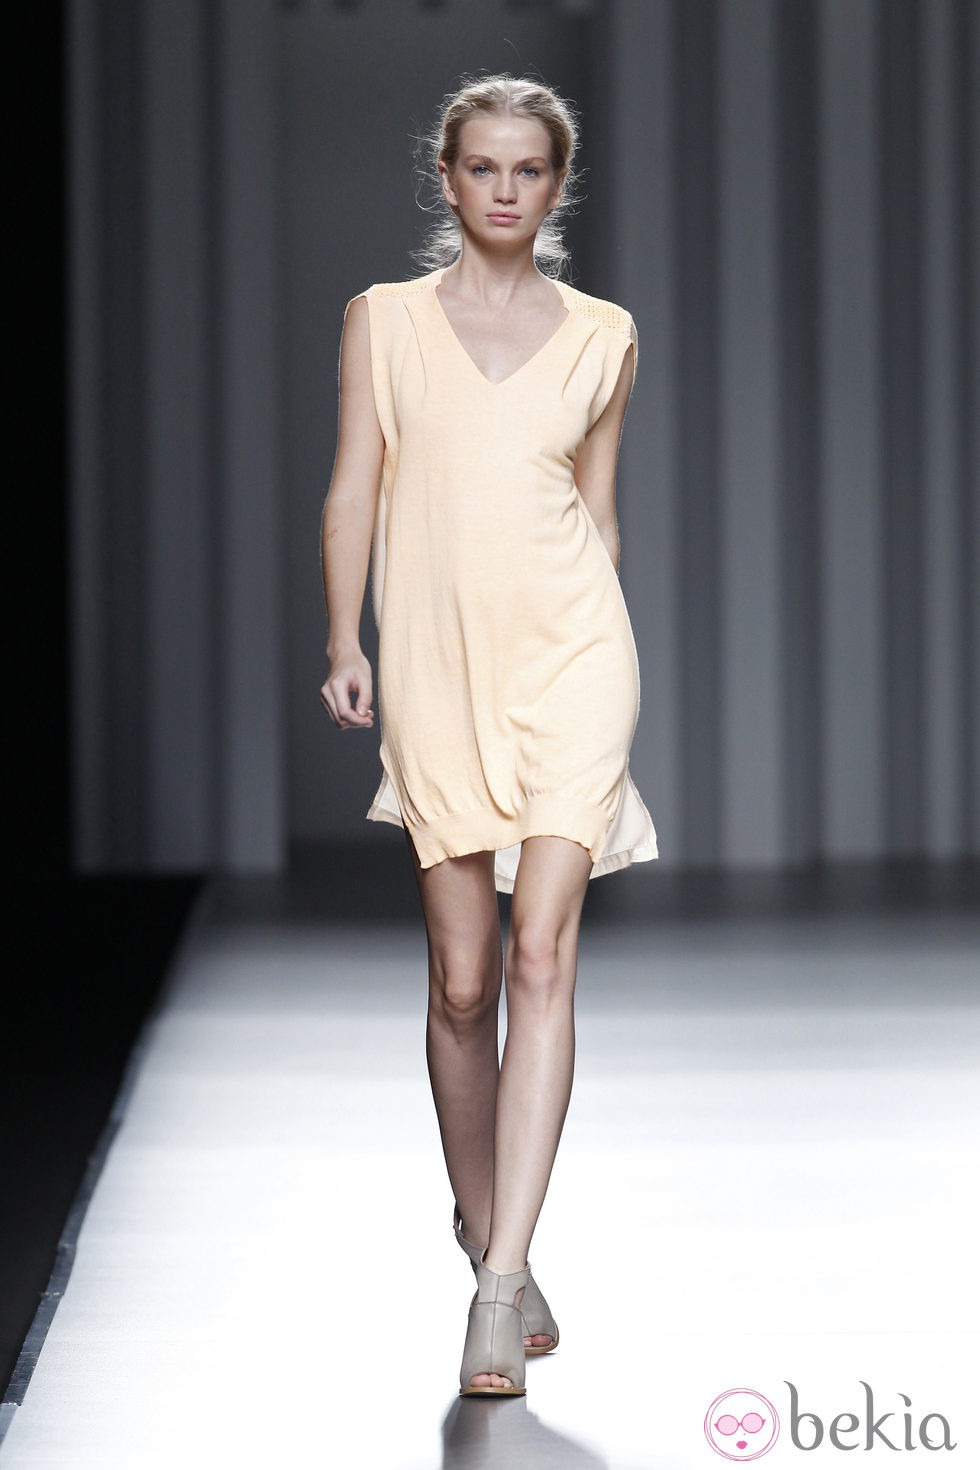 Vestido en color melocotón de la colección primavera/verano 2014 de Sita Murt en Madrid Fashion Week